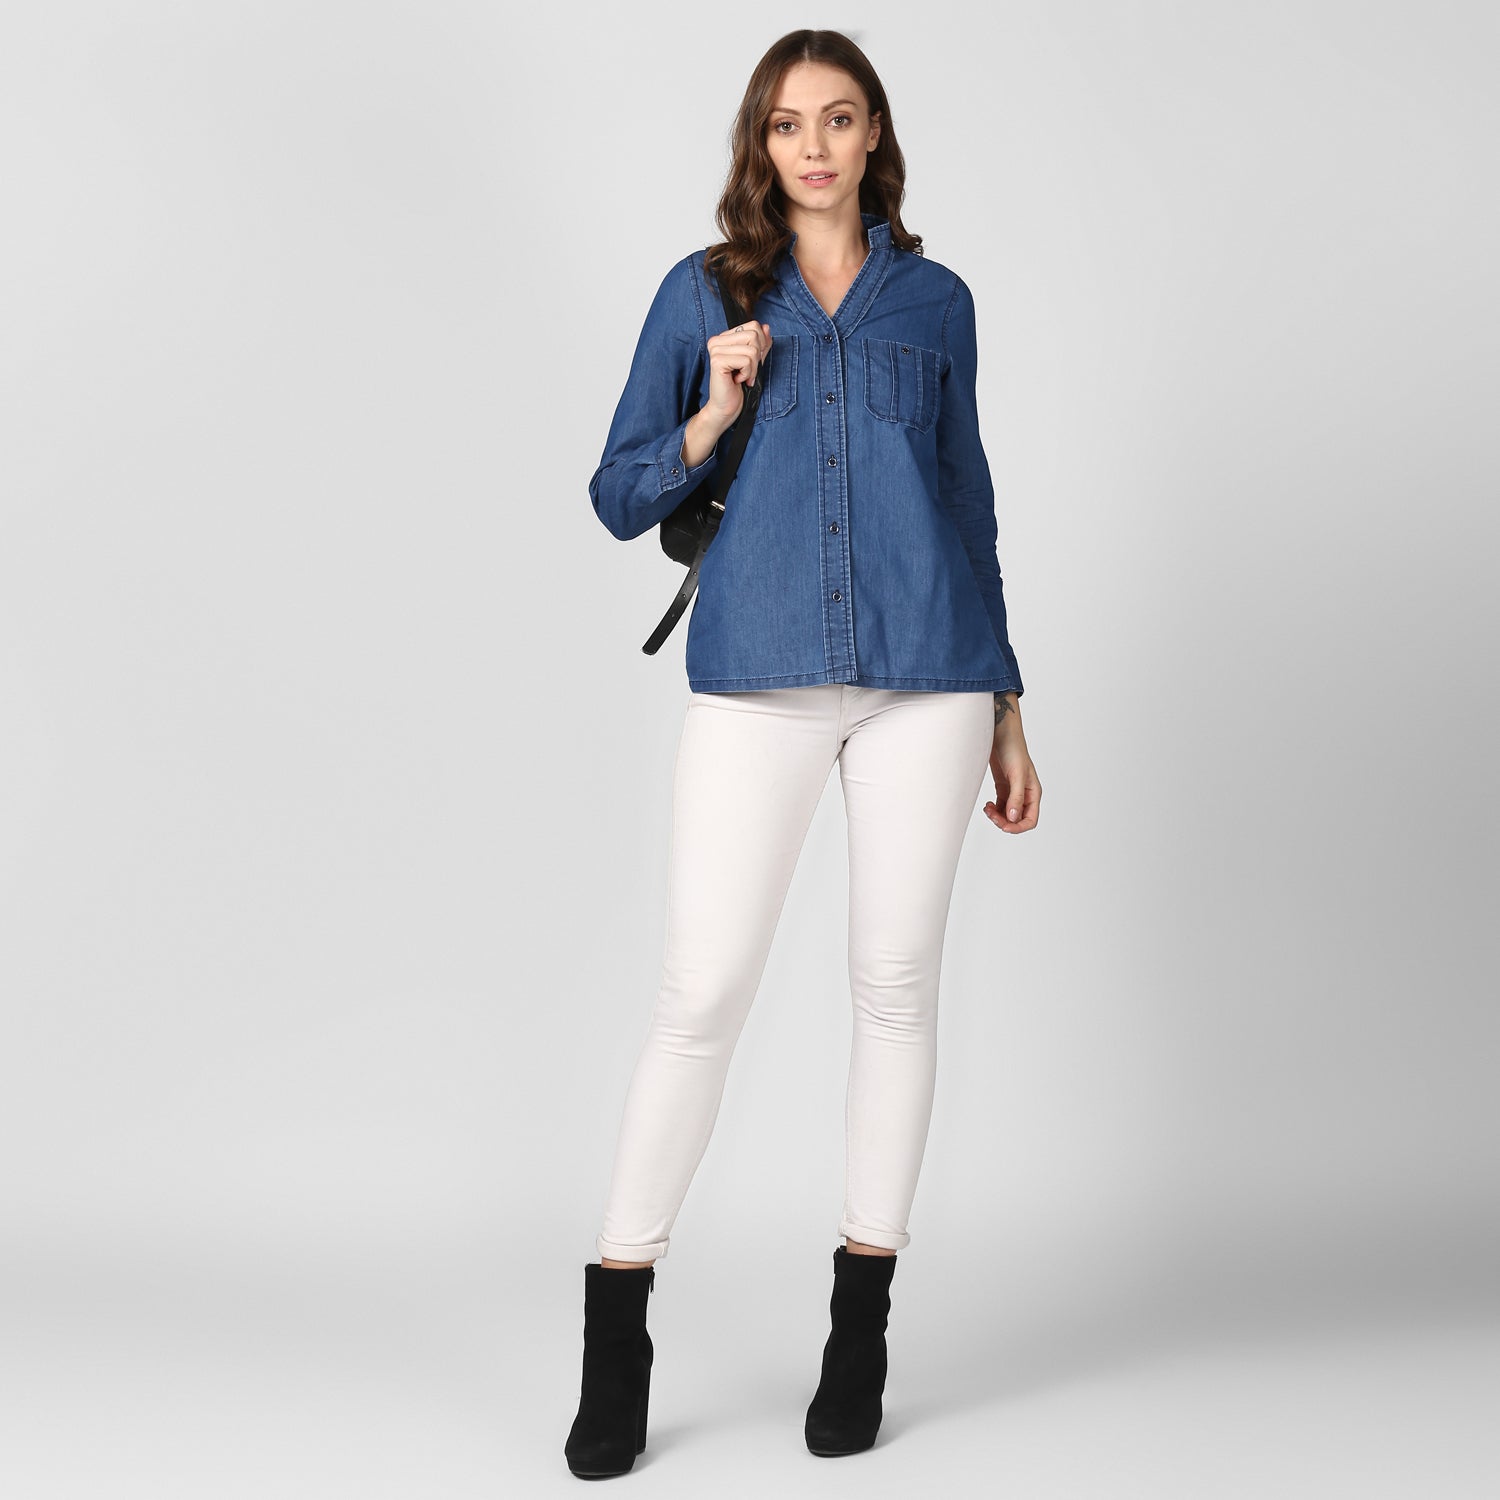 Women's Blue Denim Top cum shirt with striped pocket detail - StyleStone